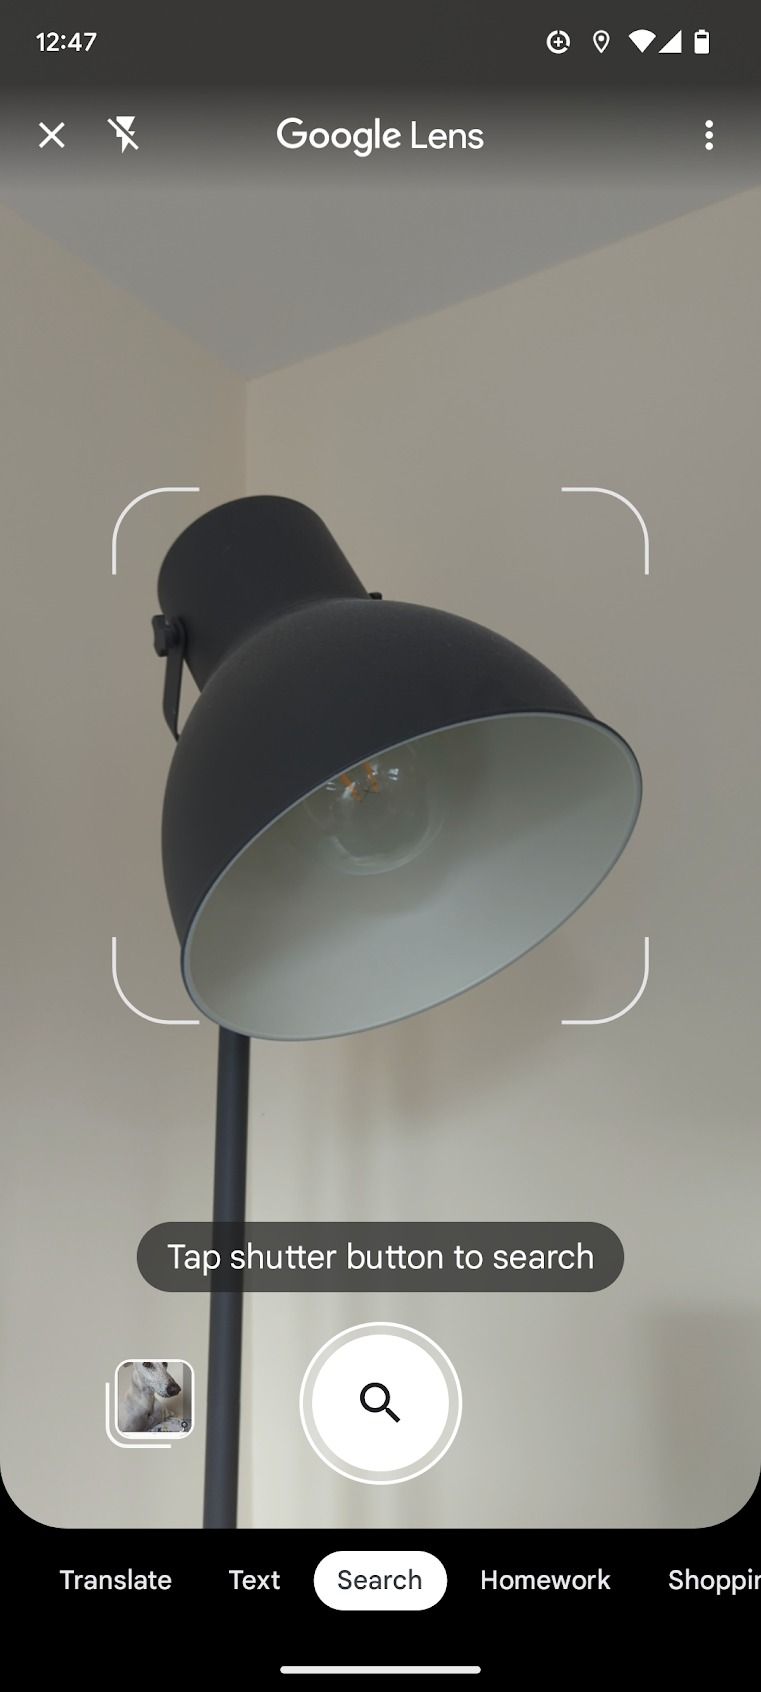 Uma captura de tela do aplicativo Google Lens é exibida, com o visor da câmera focado na digitalização de uma lâmpada.